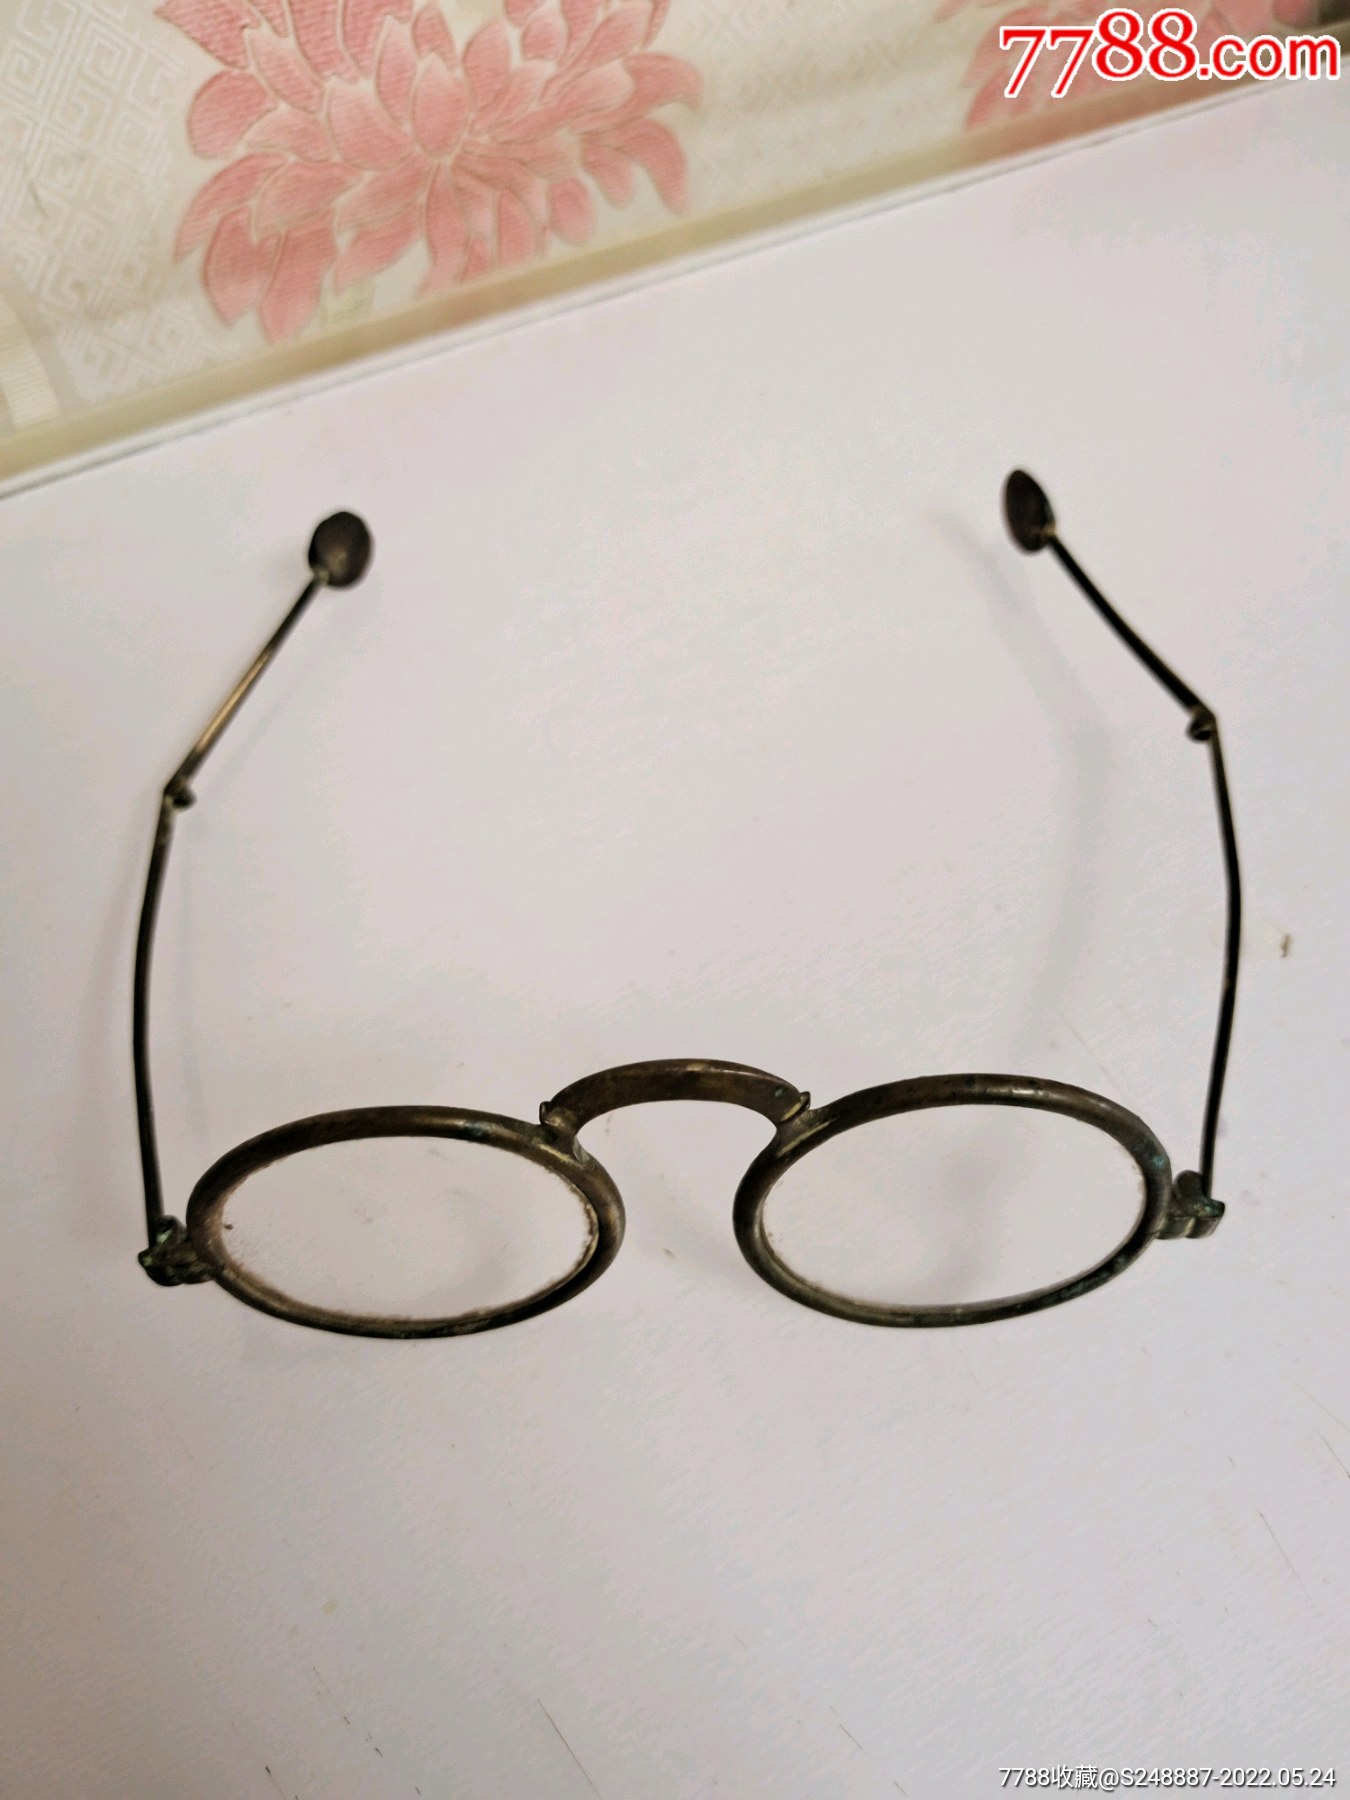 镜片直径4厘米简介:古董眼镜,     